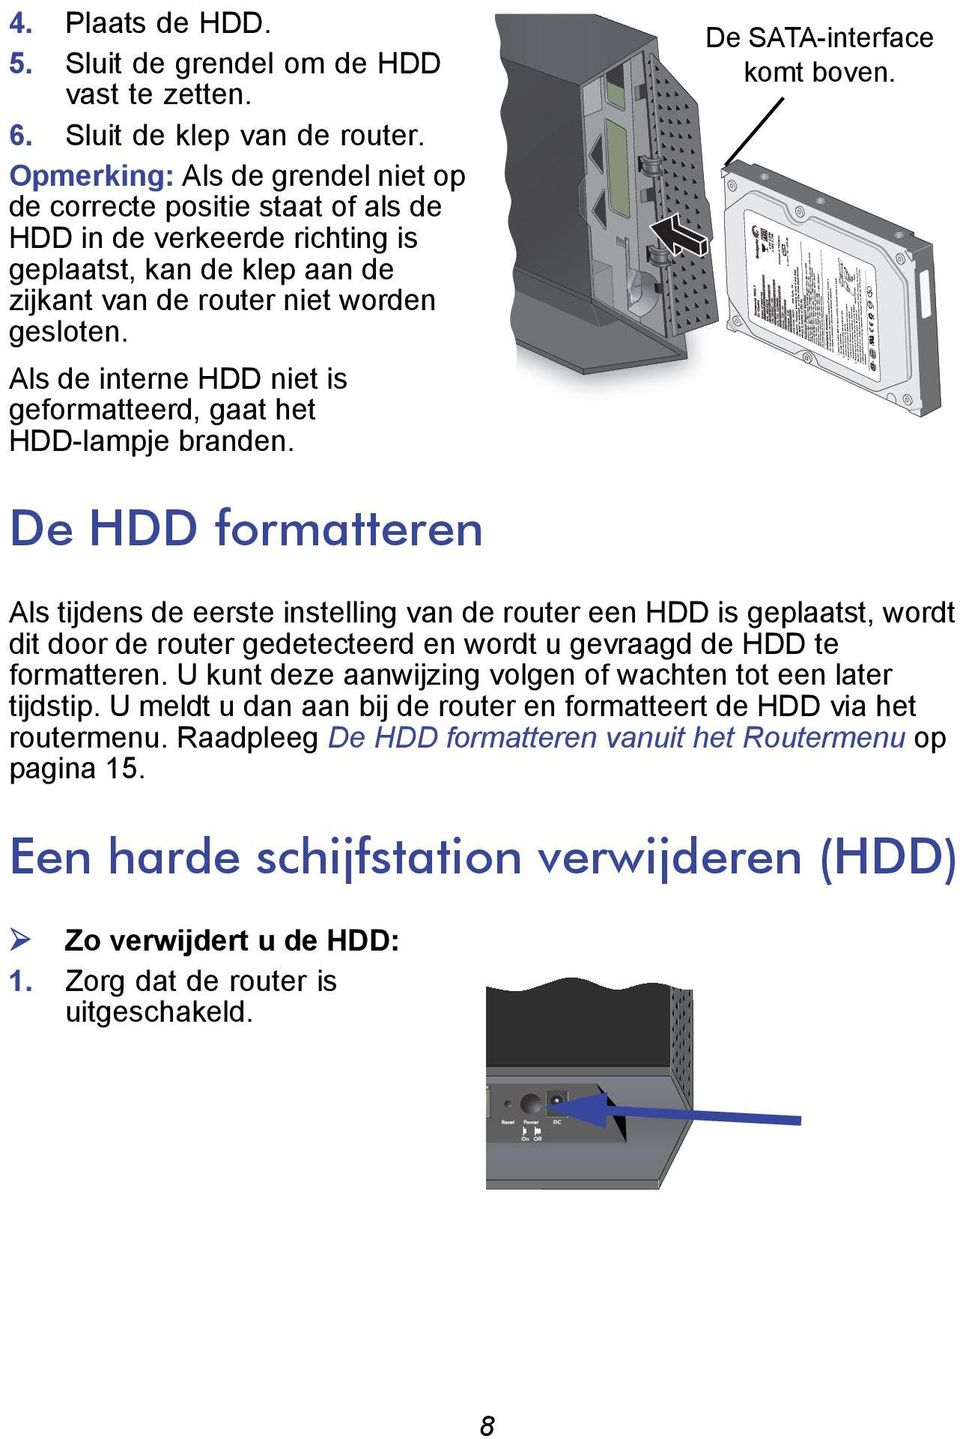 Als de interne HDD niet is geformatteerd, gaat het HDD-lampje branden. De SATA-interface komt boven.